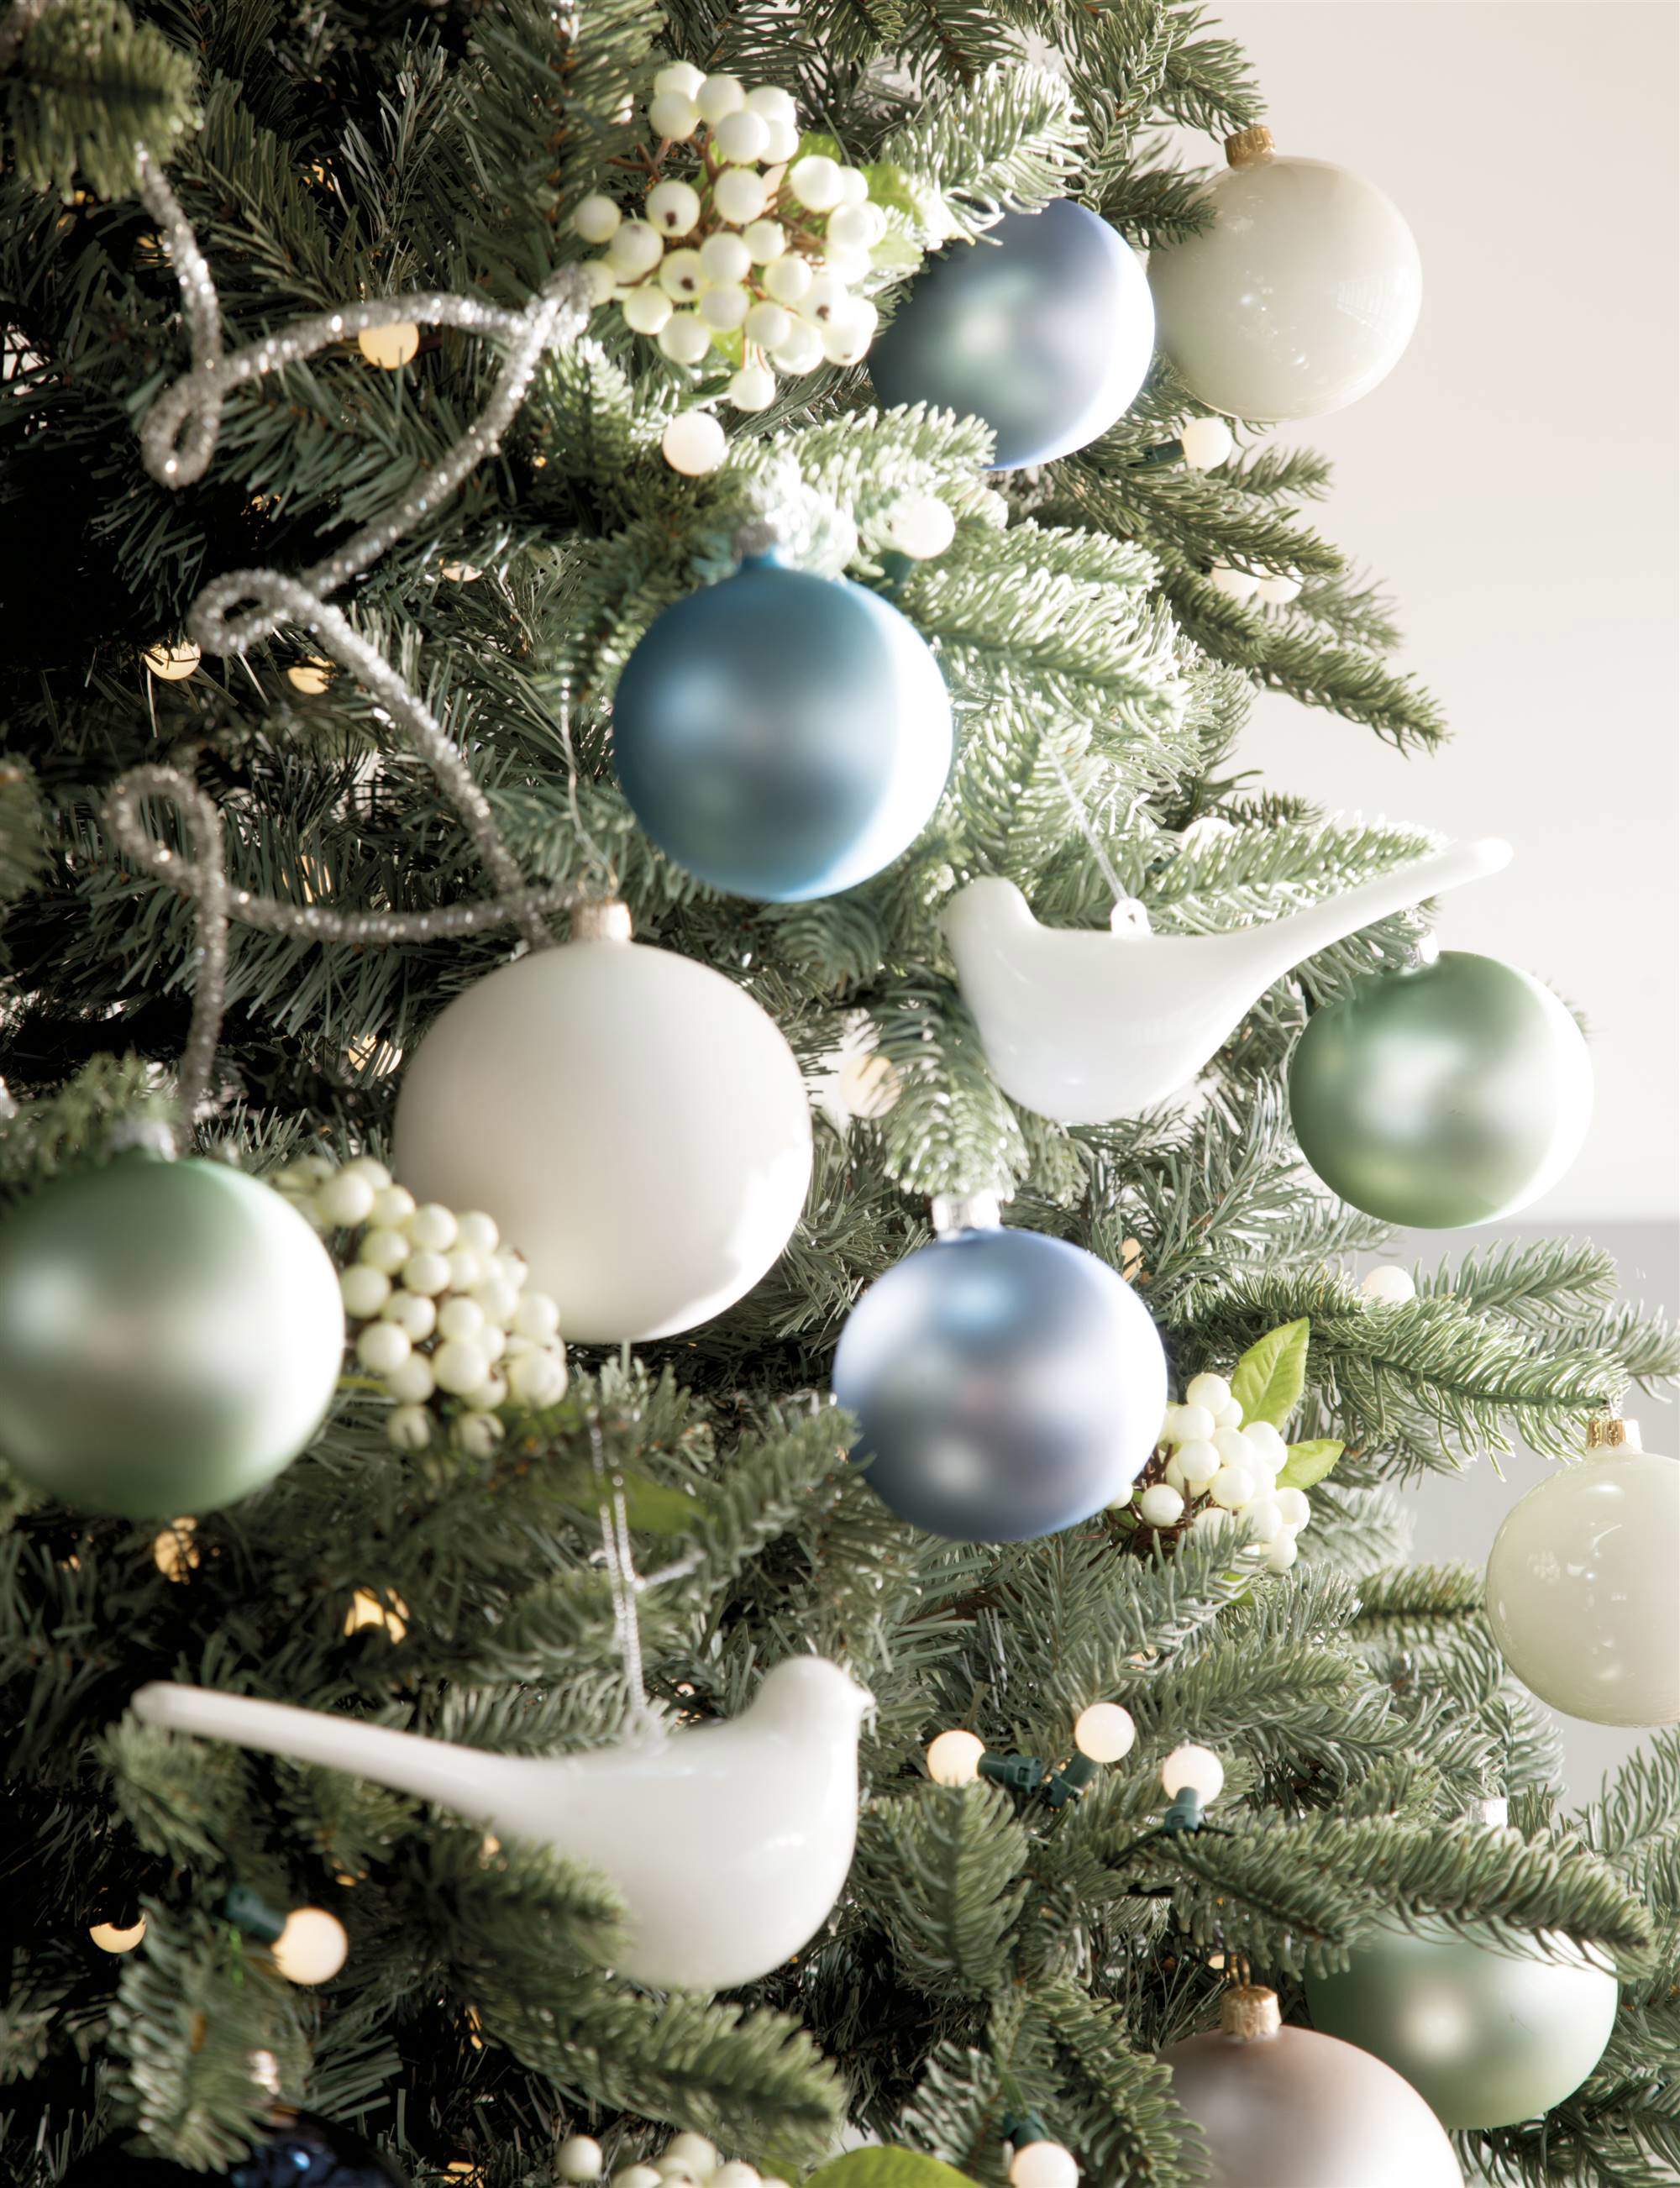 Bolas y figuras navideñas en tonos blancos, azules y verdes.